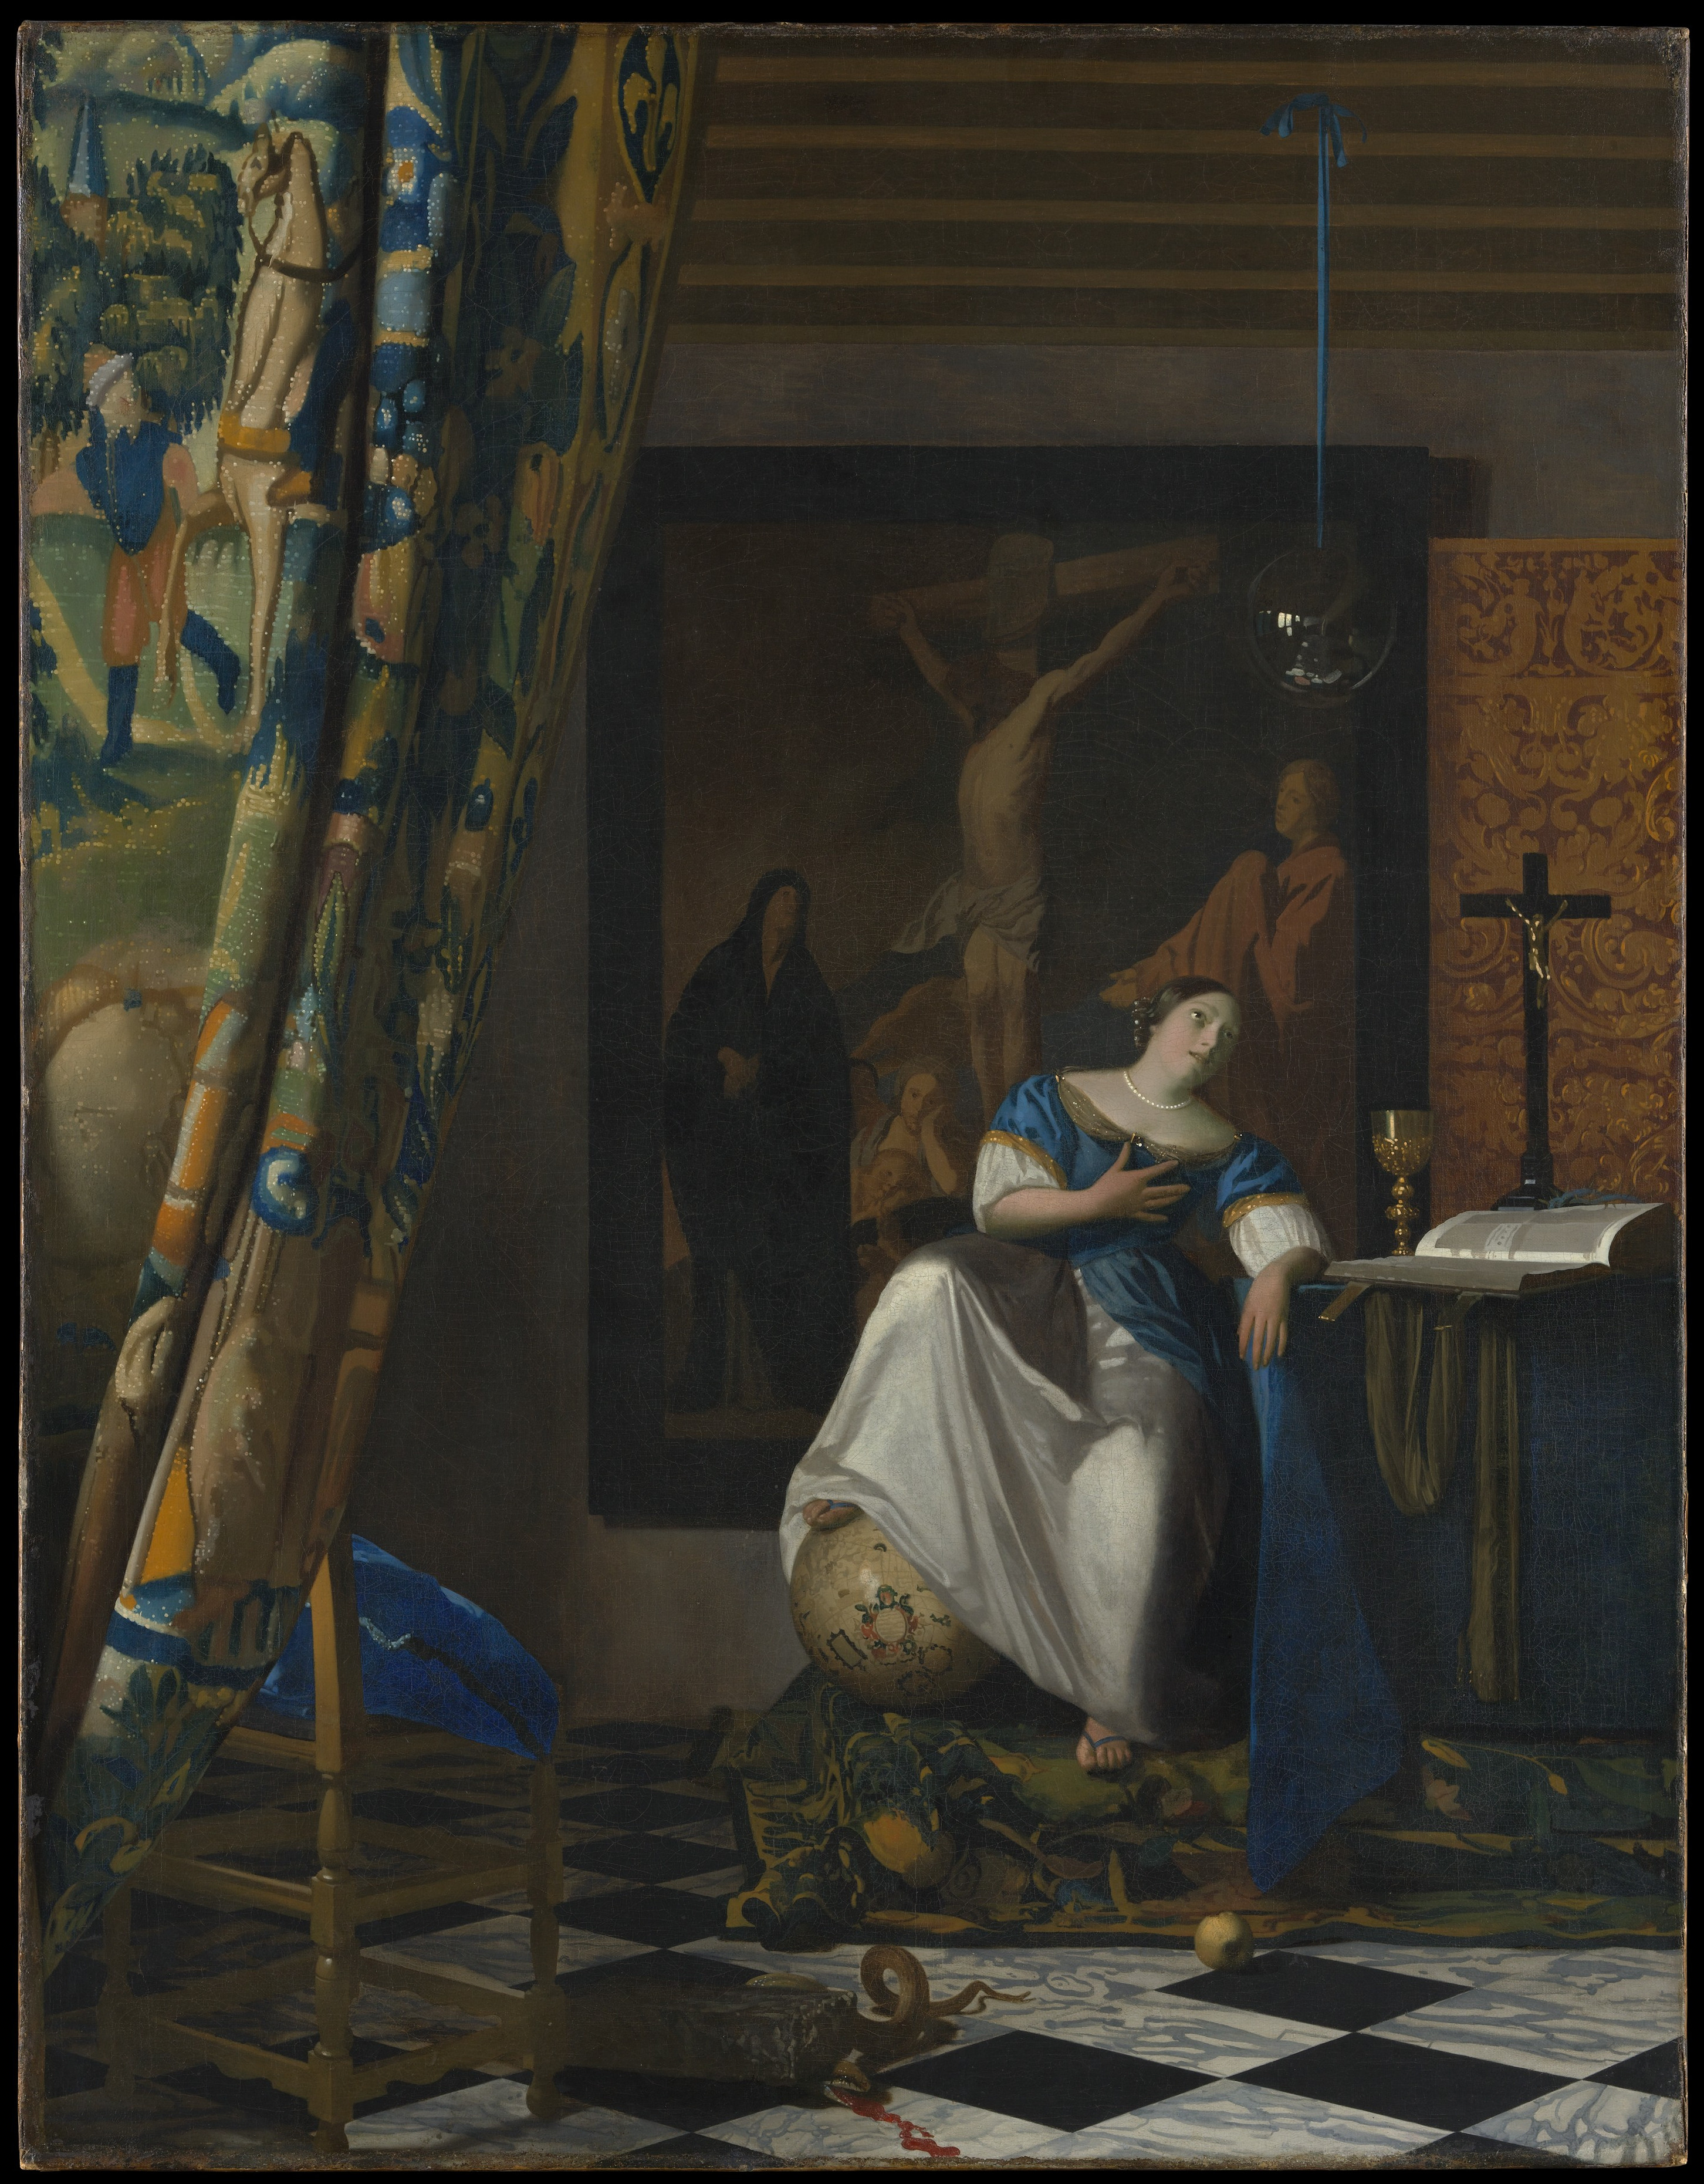 Allegorie des Glaubens by Johannes Vermeer - 1671-1674 - 114.3 x 88.9 cm Metropolitan Museum of Art